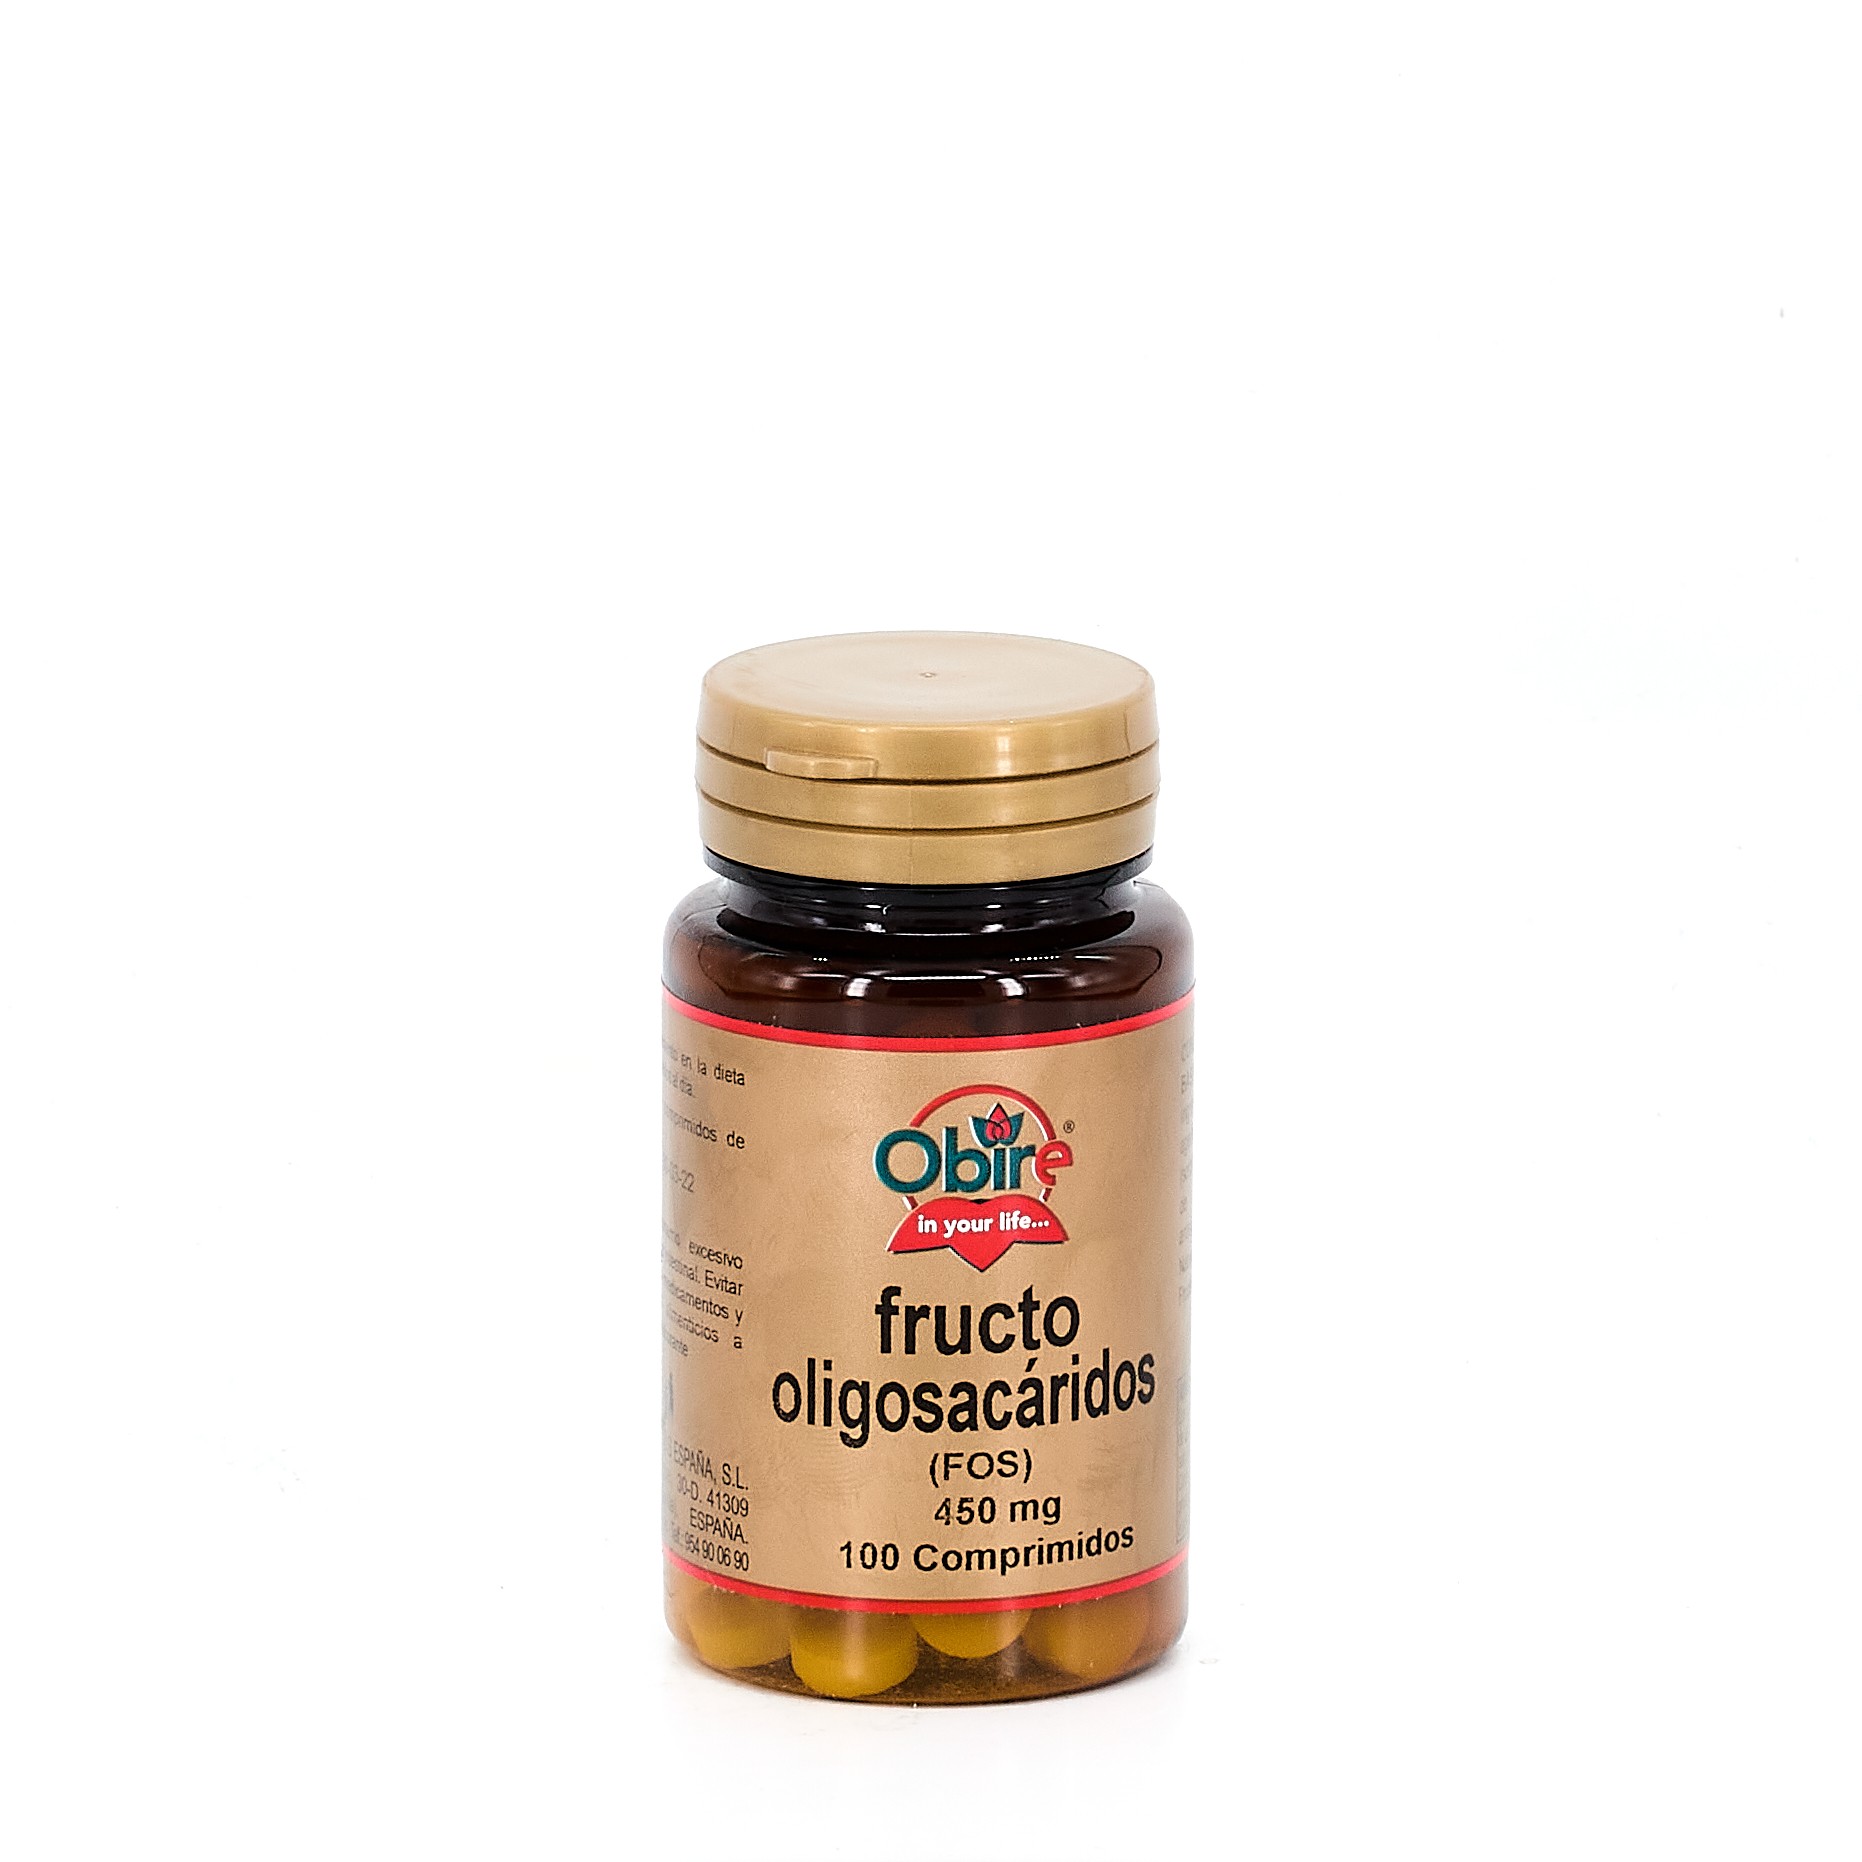 Obire Fructooligosacaridos 450 mg, 100 Comprimidos.